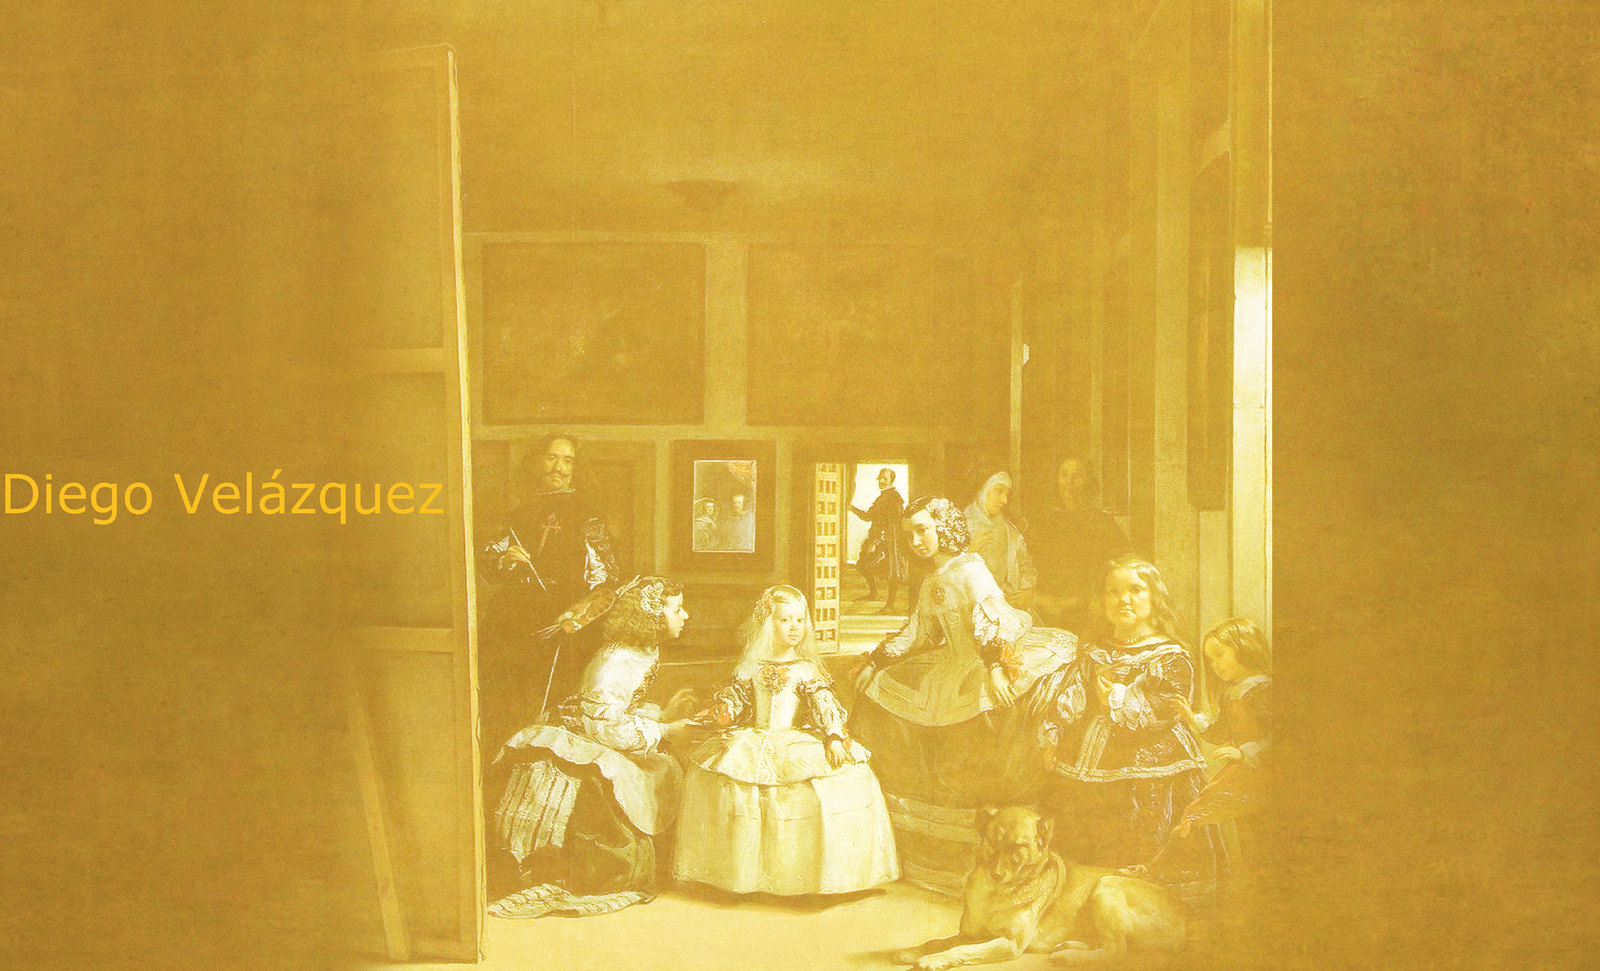 Meninas, iconósfera de Diego Velazquez (1656), estudio de Francisco de Goya y Lucientes (1778), paráfrasis y versiones Pablo Picasso (1957).